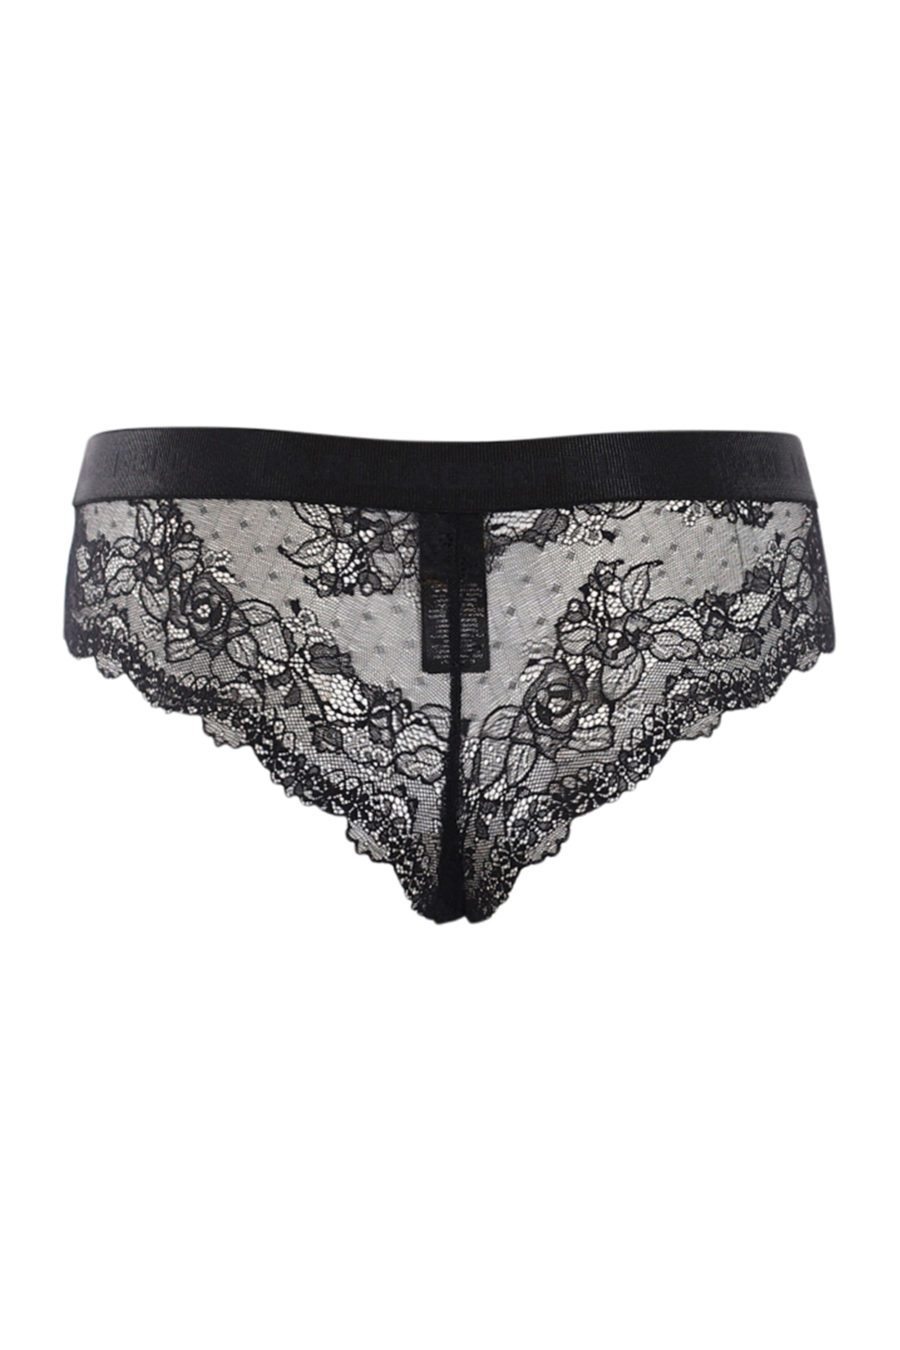 Black panties in lace - IMG 0606